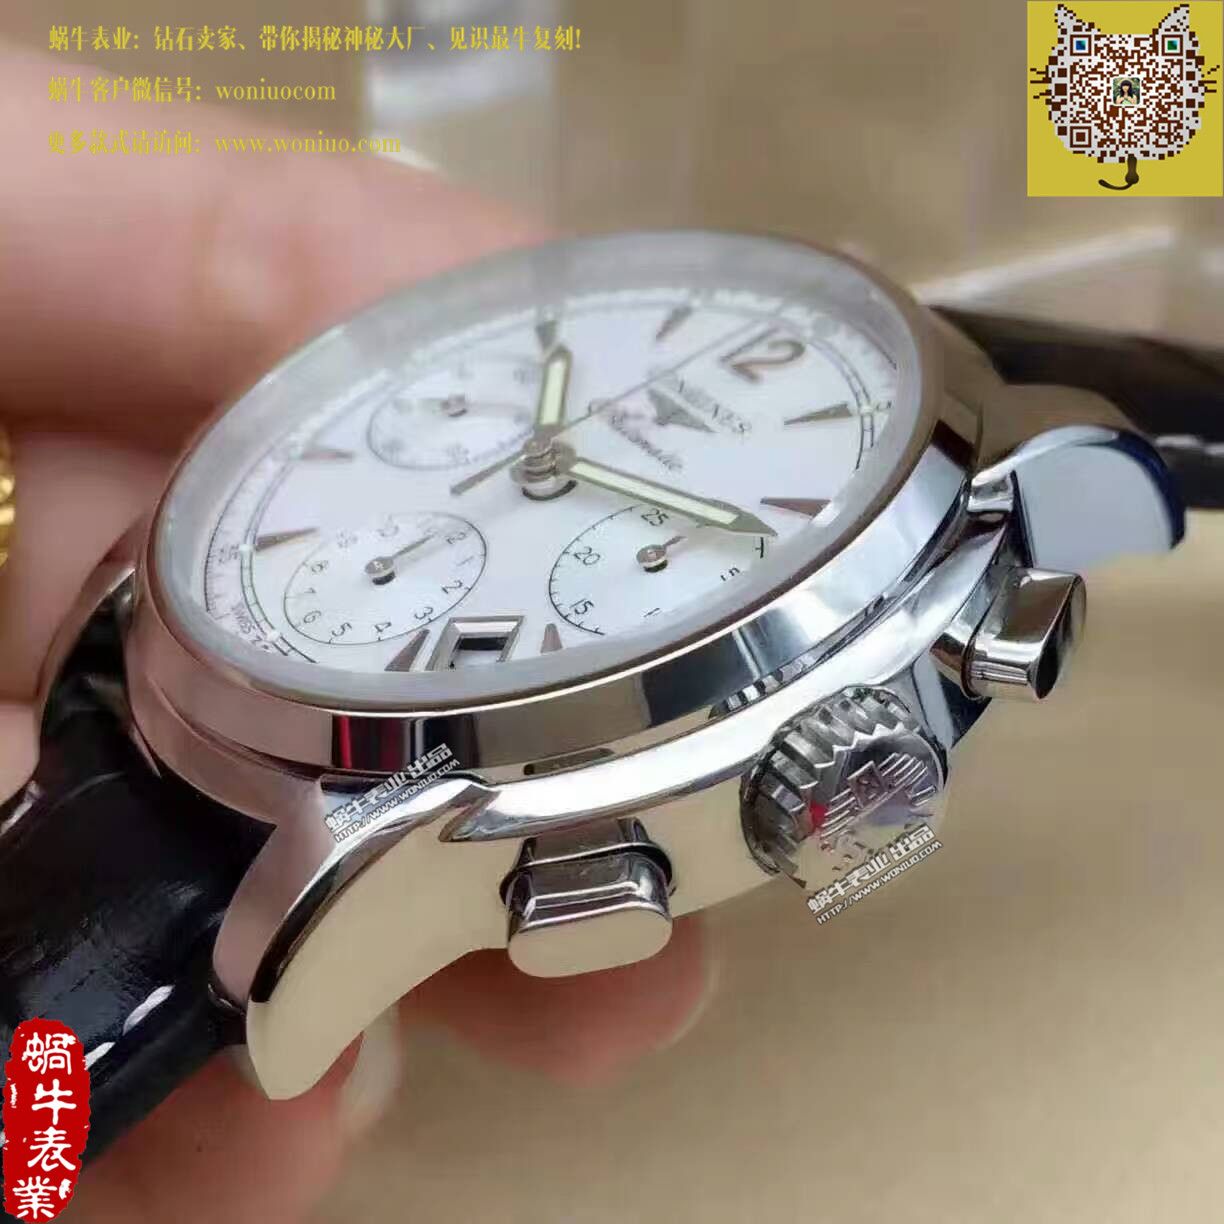 【TW台湾厂1比1顶级高仿手表】浪琴SAINT-IMIER索伊米亚 系列L2.753.4.72.6腕表 